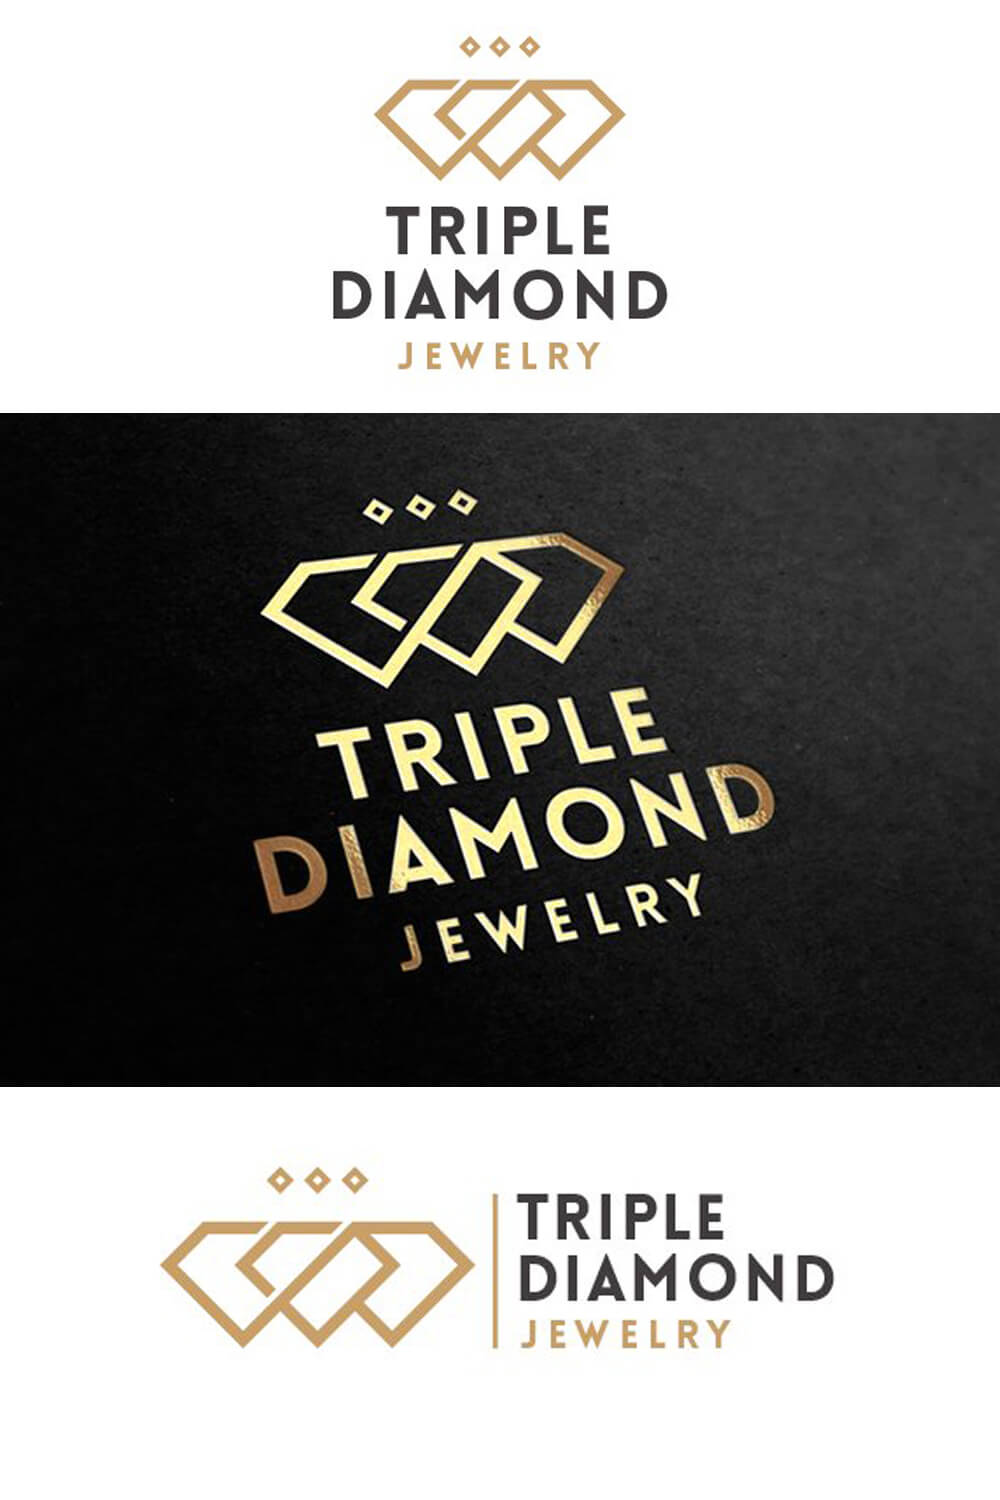 Three "Triple Diamond Jewelry" logos on horizontal stripes in white and black.